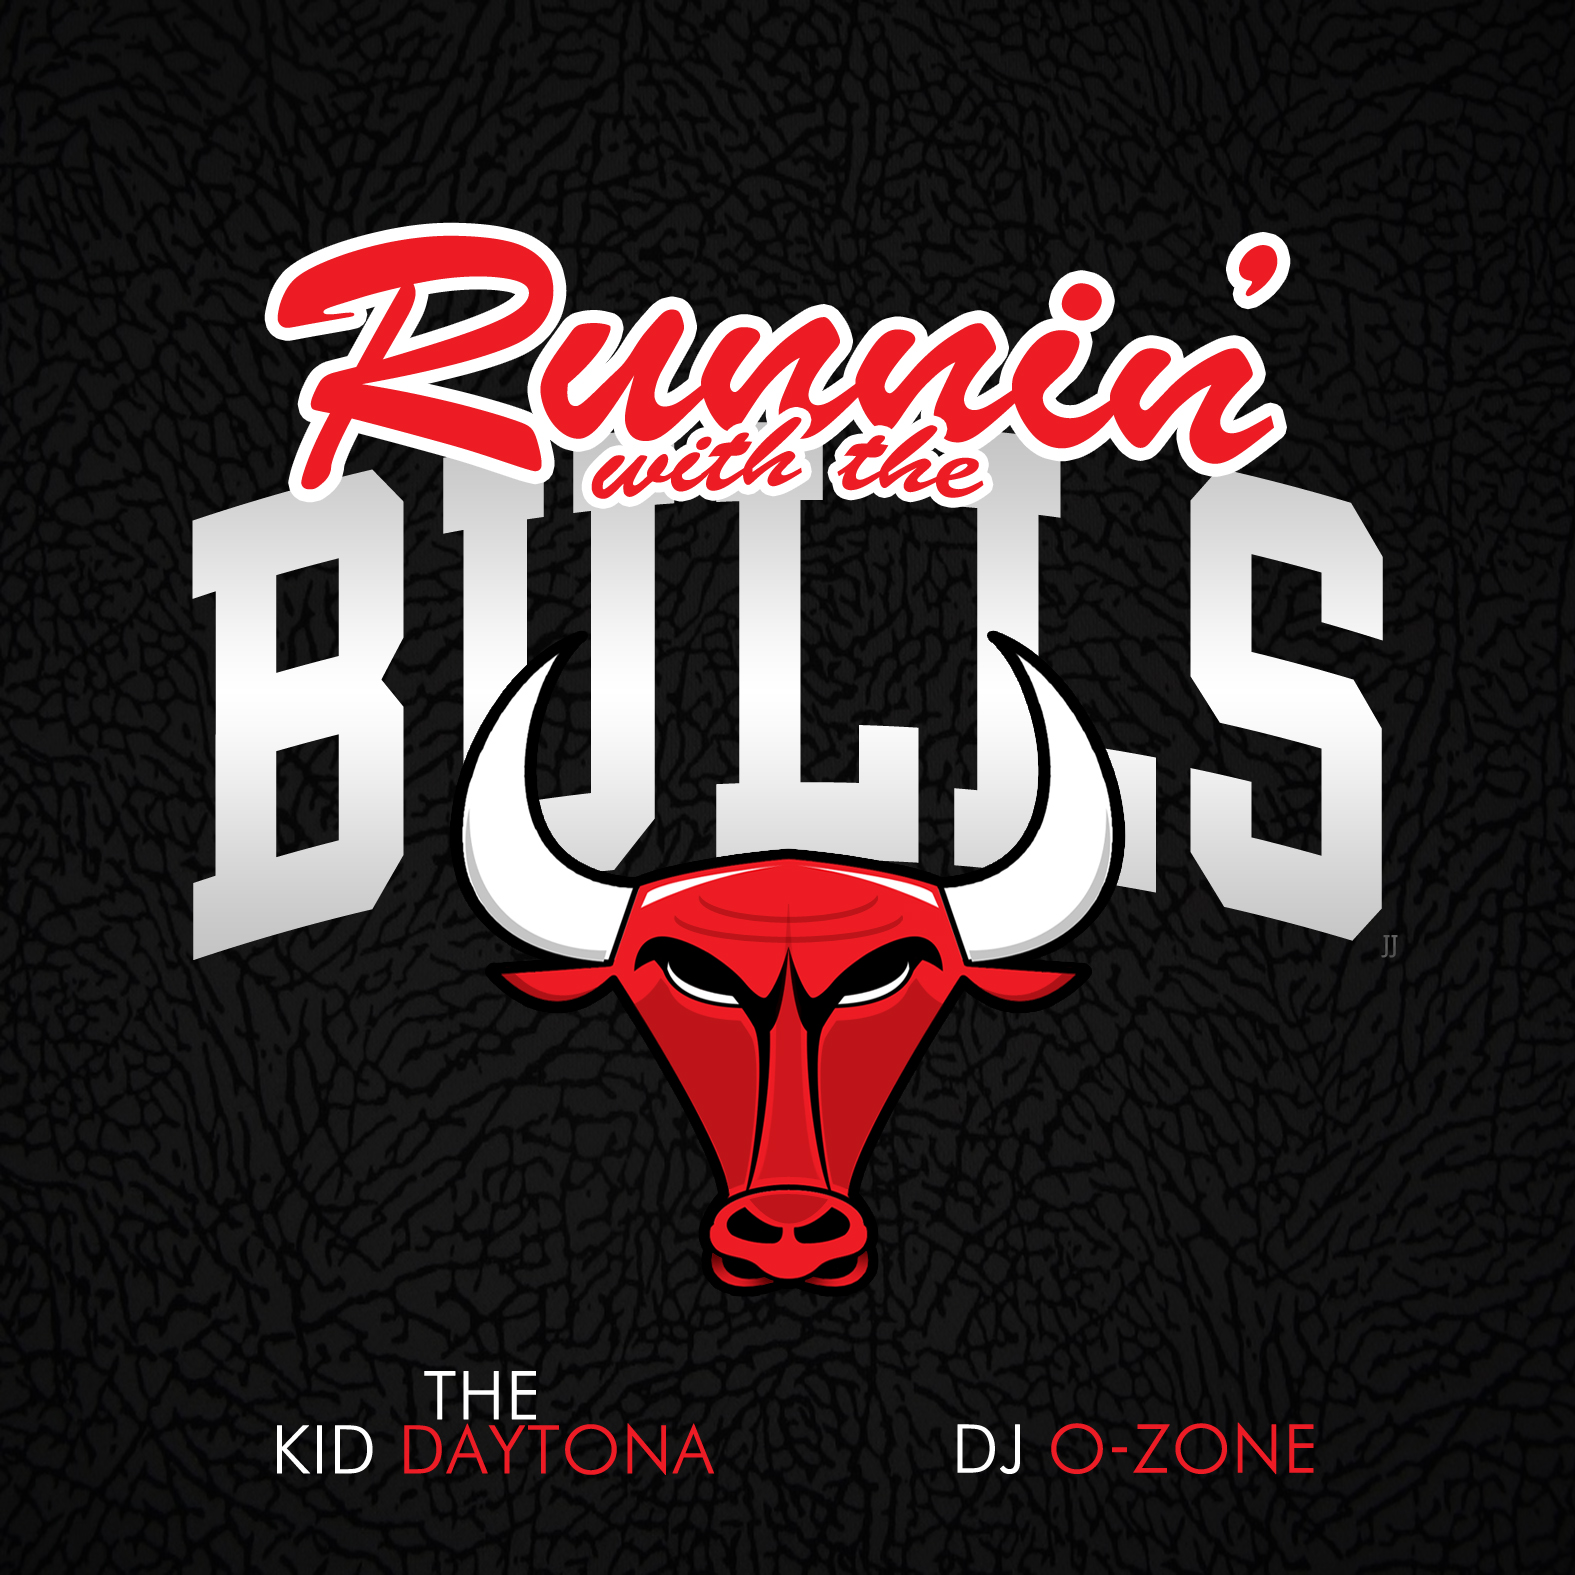 The Kid Daytona x DJ Ozone "Running With The Bulls" Release | @TheKidDaytona @DJO_zone @MediaHunterPR1